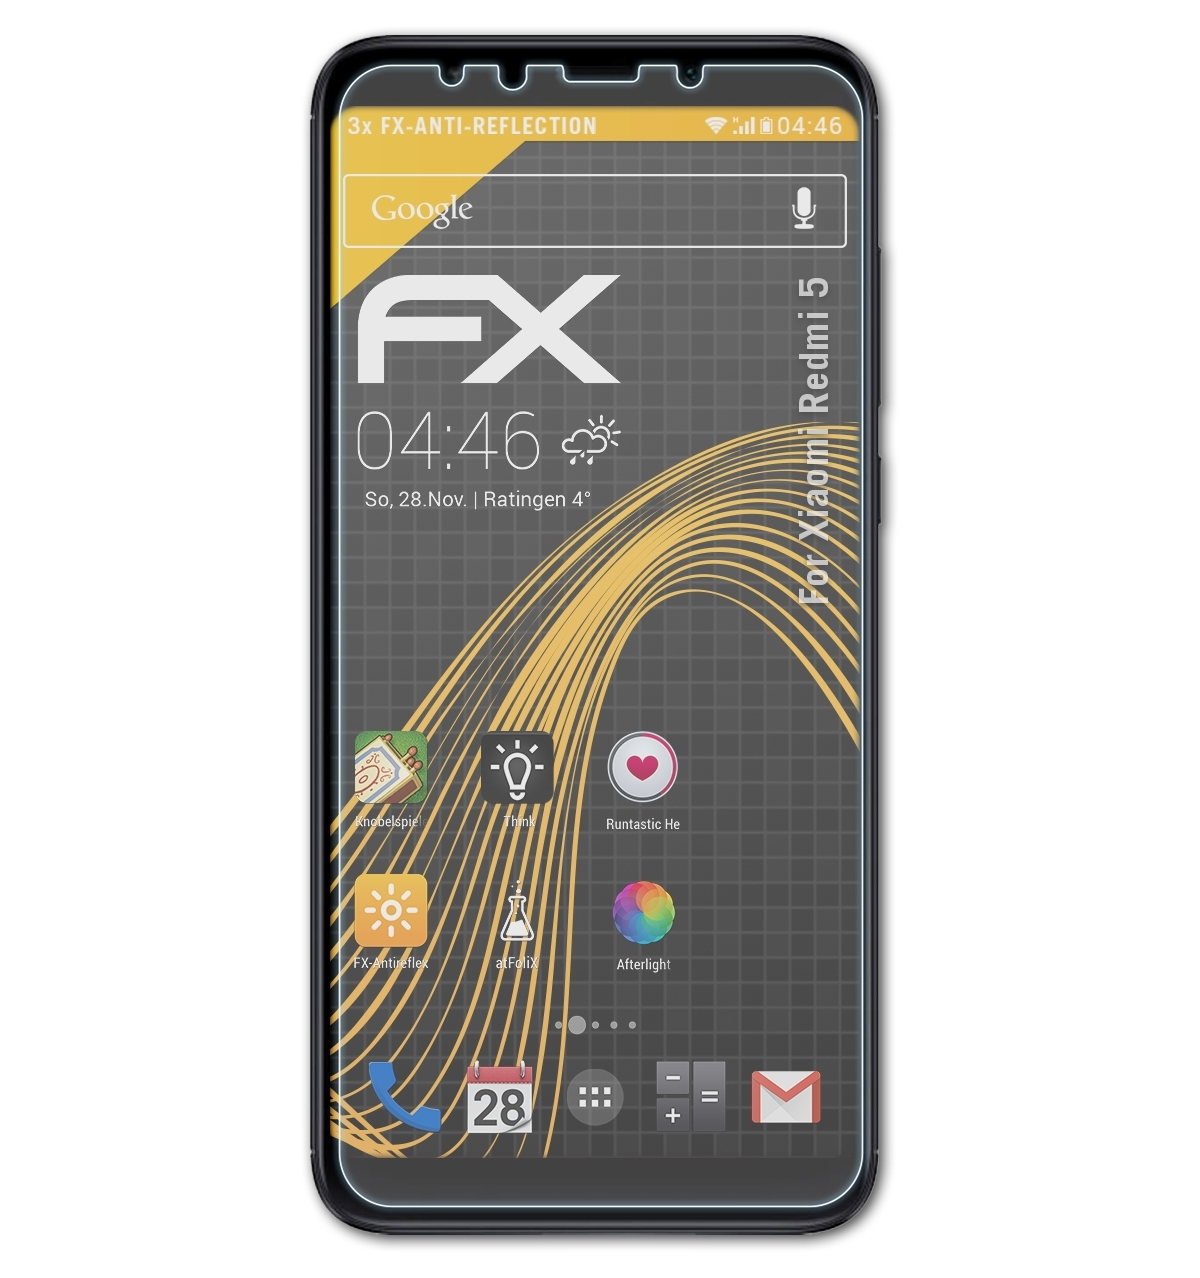 5) 3x Xiaomi FX-Antireflex Displayschutz(für ATFOLIX Redmi